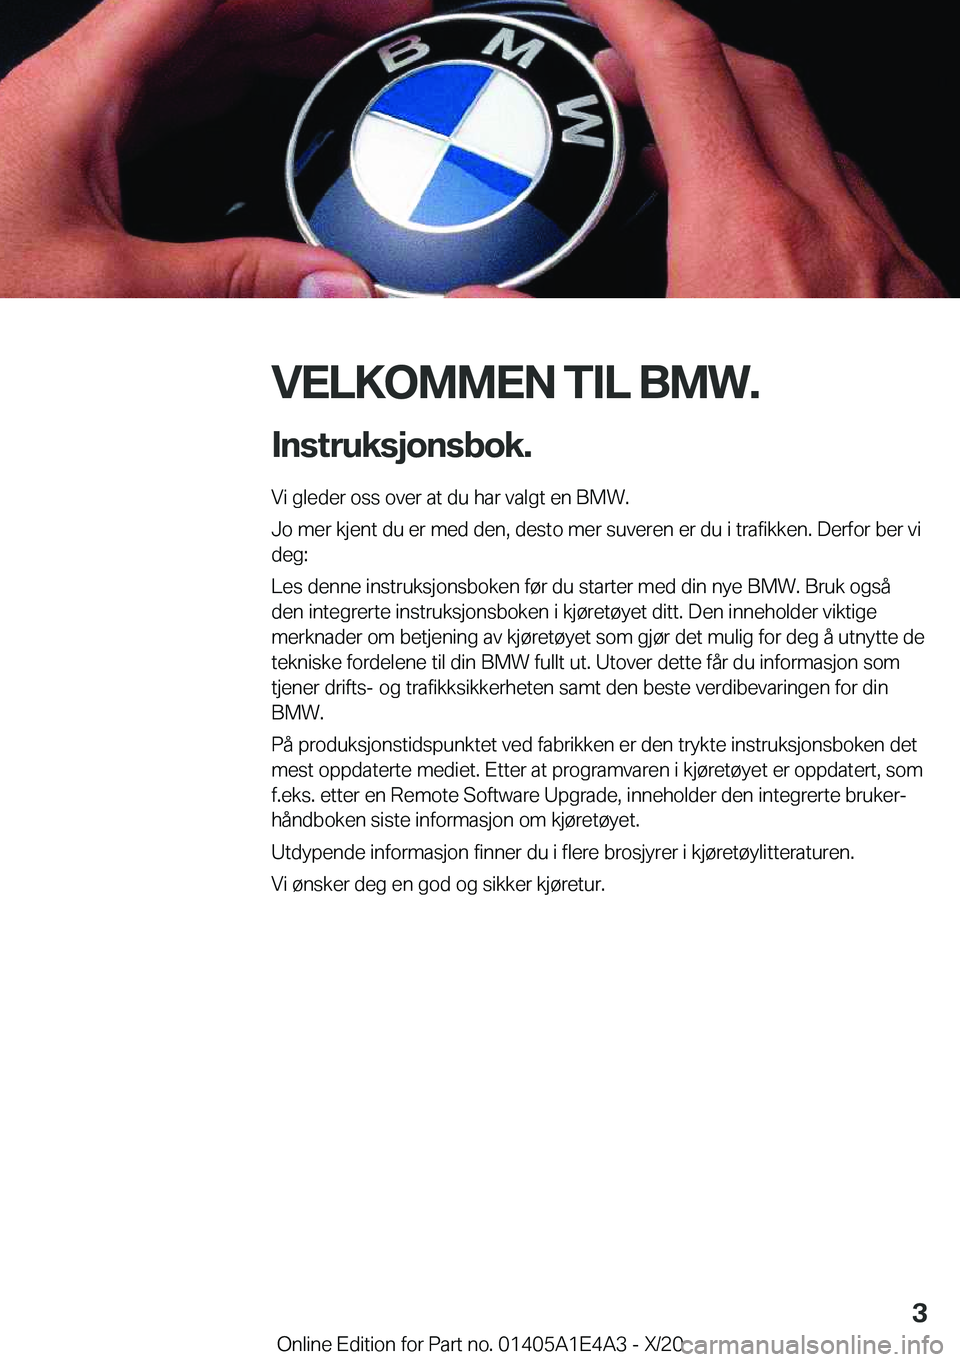 BMW M3 2021  InstruksjonsbØker (in Norwegian) �V�E�L�K�O�M�M�E�N��T�I�L��B�M�W�.�I�n�s�t�r�u�k�s�j�o�n�s�b�o�k�.
�V�i��g�l�e�d�e�r��o�s�s��o�v�e�r��a�t��d�u��h�a�r��v�a�l�g�t��e�n��B�M�W�.
�J�o��m�e�r��k�j�e�n�t��d�u��e�r��m�e�d�